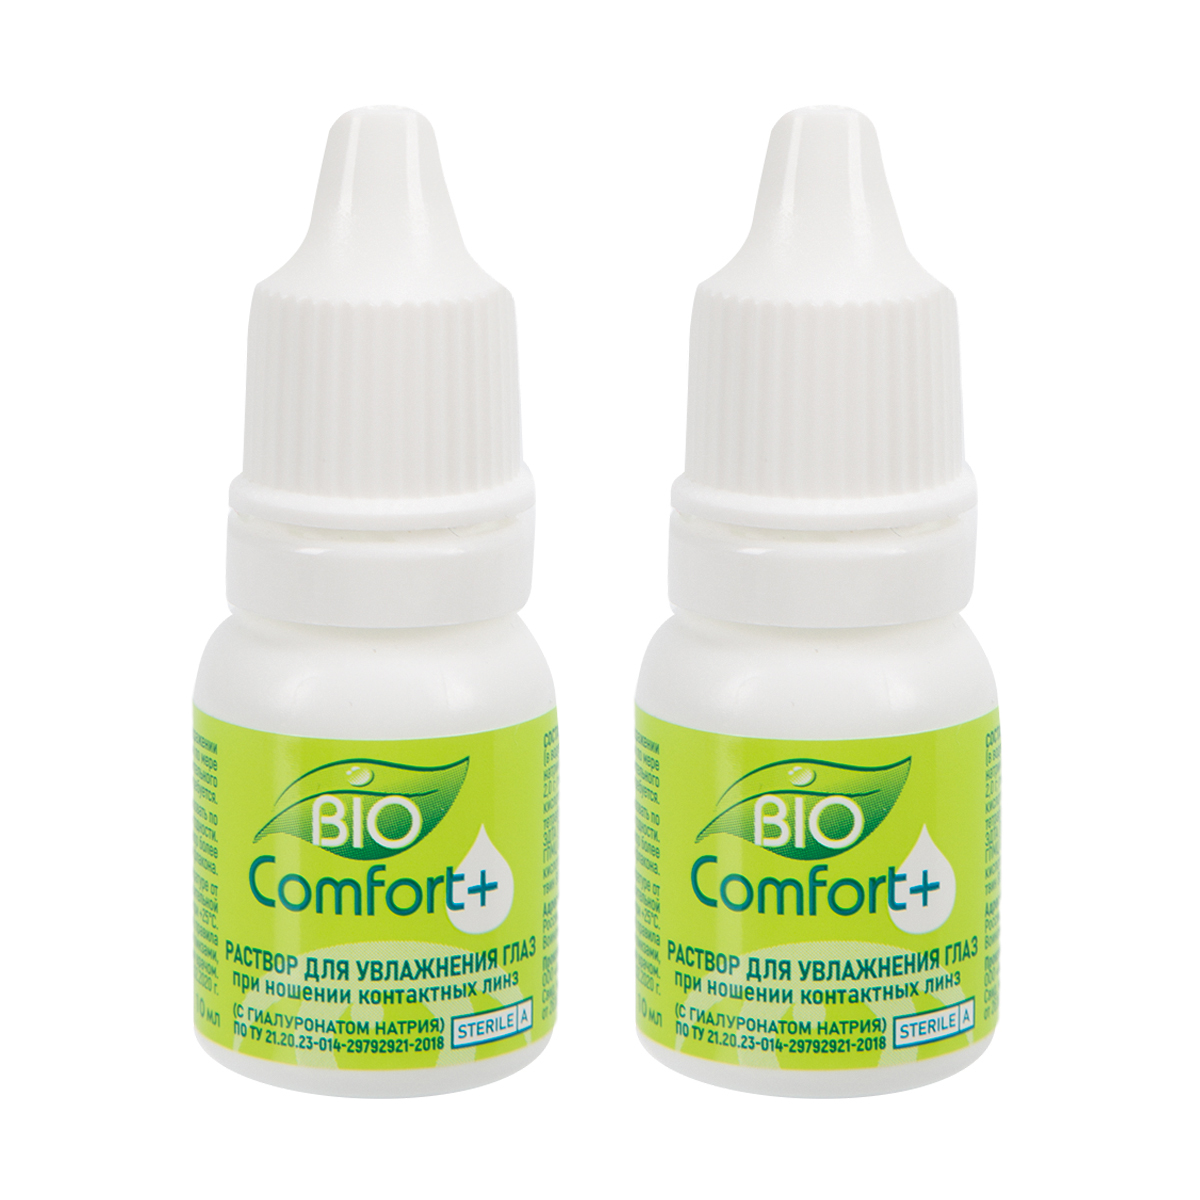 Раствор для увлажнения глаз Bio Comfort + (2 шт. по 10 мл), Изделия медицинского назначения, Оптика